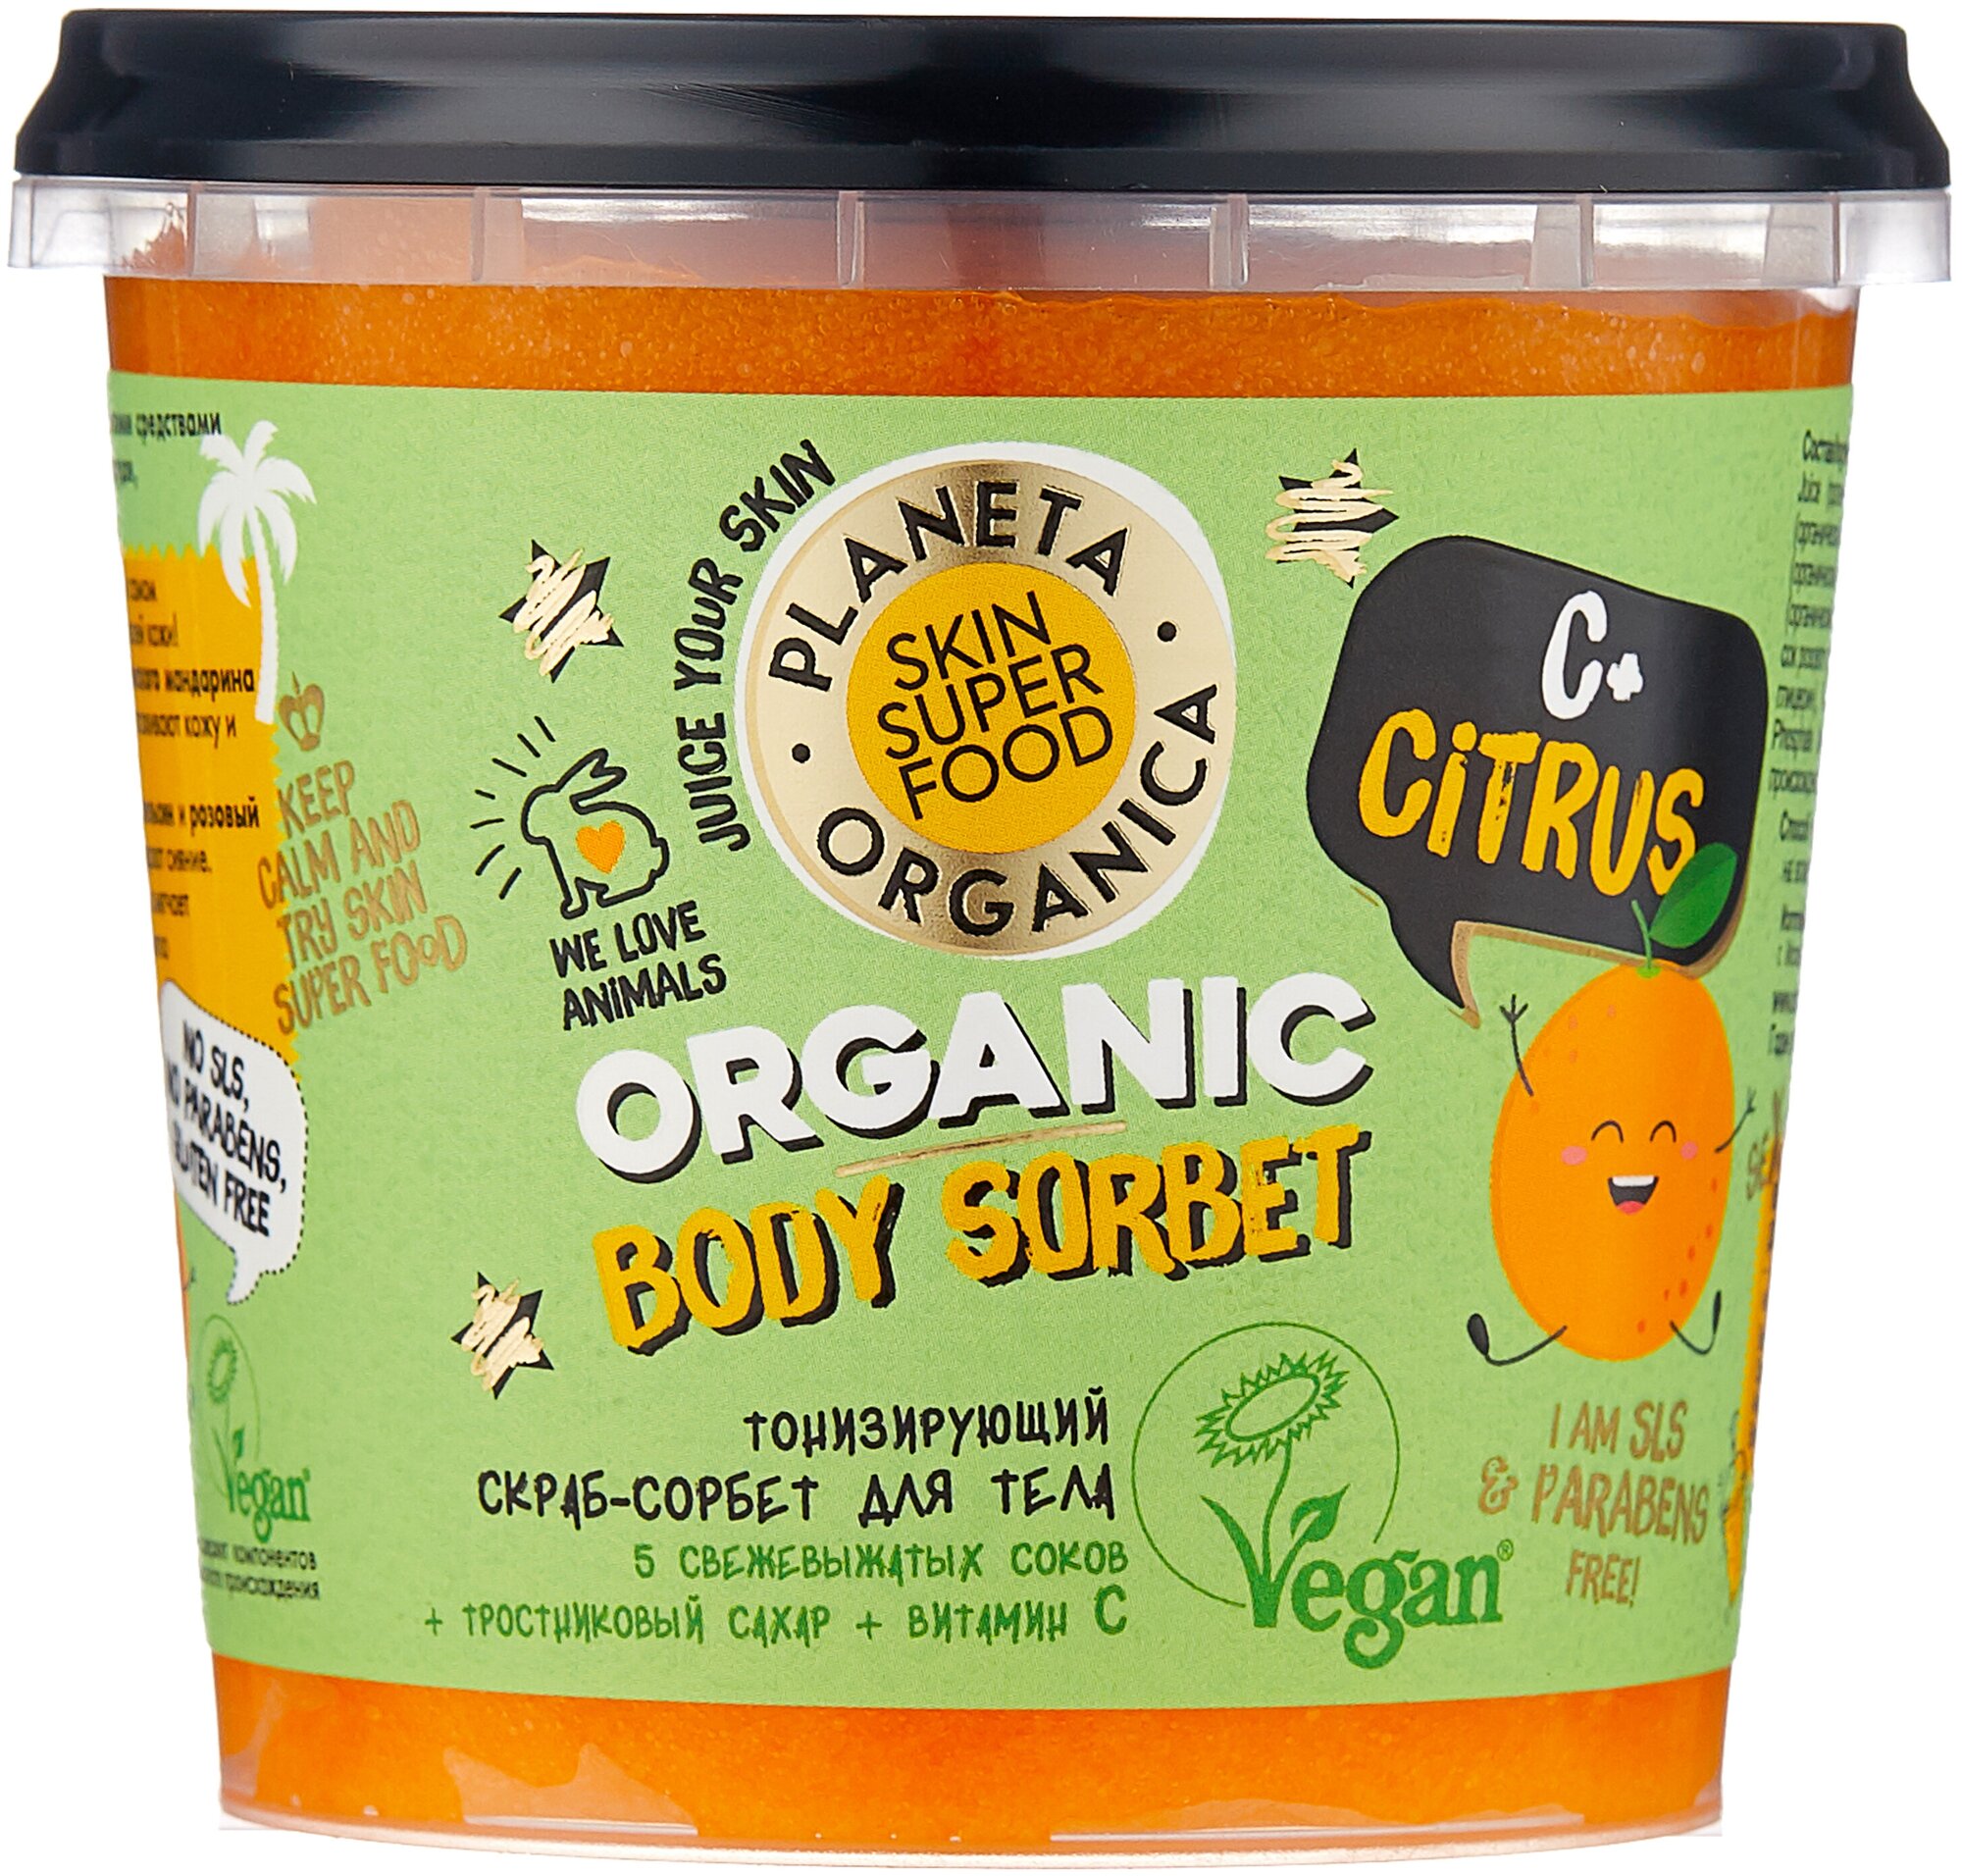 Скраб-сорбет для тела Тонизирующий "C+ Citrus" Planeta Organica Skin Super Food, 485 г